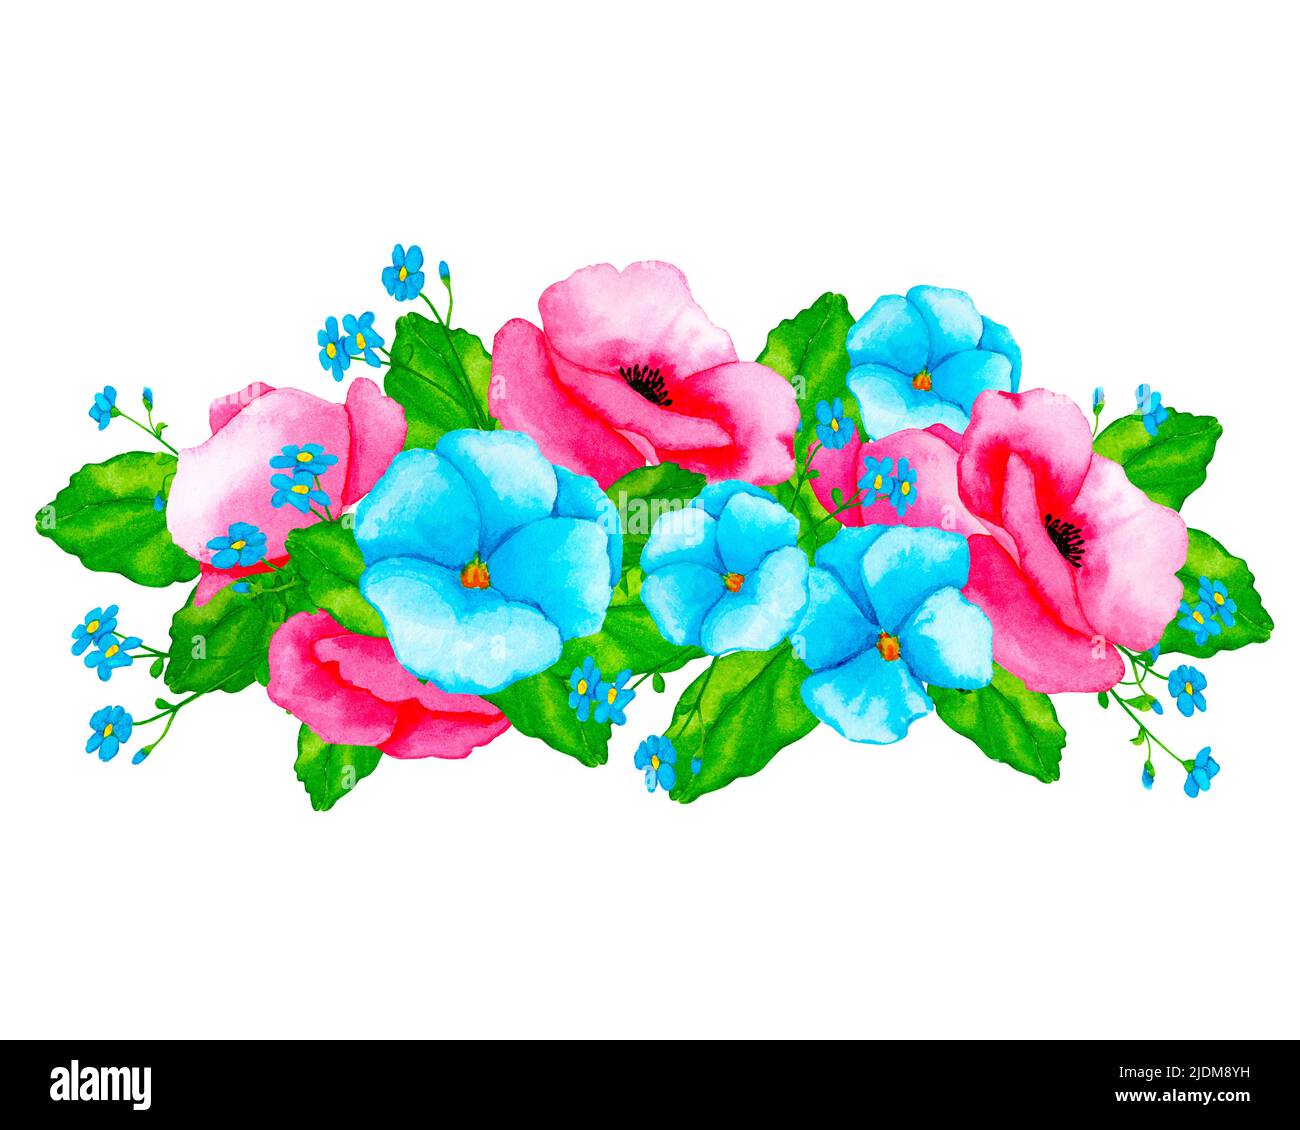 Aquarell-Vignette aus Wildblumen und wilden Kräutern. Handgezeichneter Clipart mit Aquarellfarben. Gestaltungselement für Karten, Einladungen, Poster, Stoffdrucke. Stockfoto